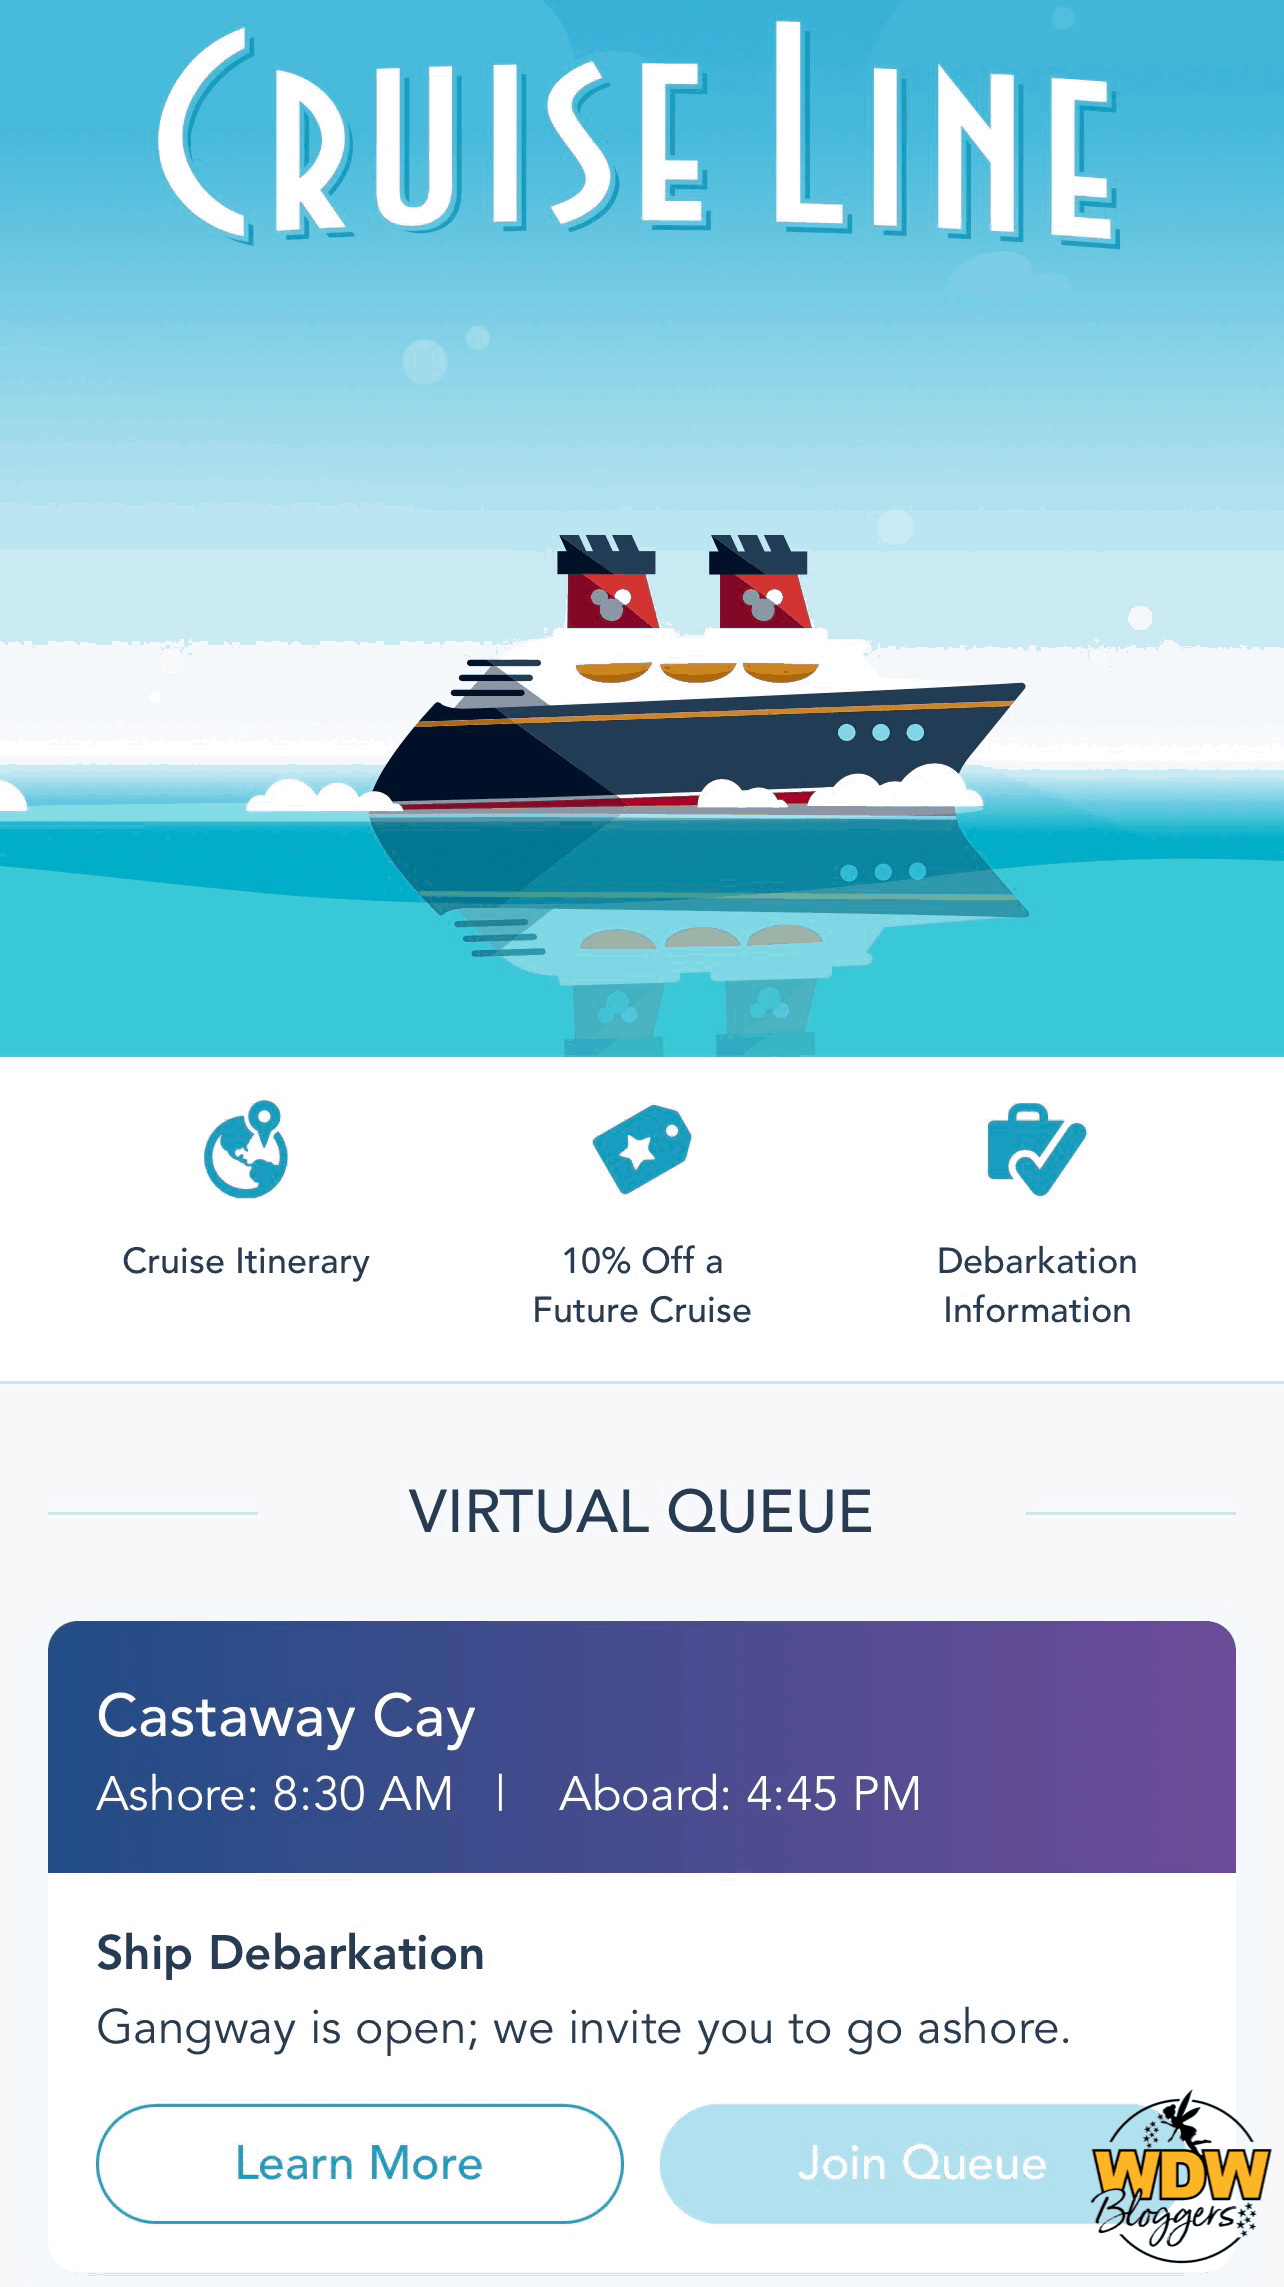 Disney-Cruise-Line-Castaway-Cay-Virtual-Queue-6